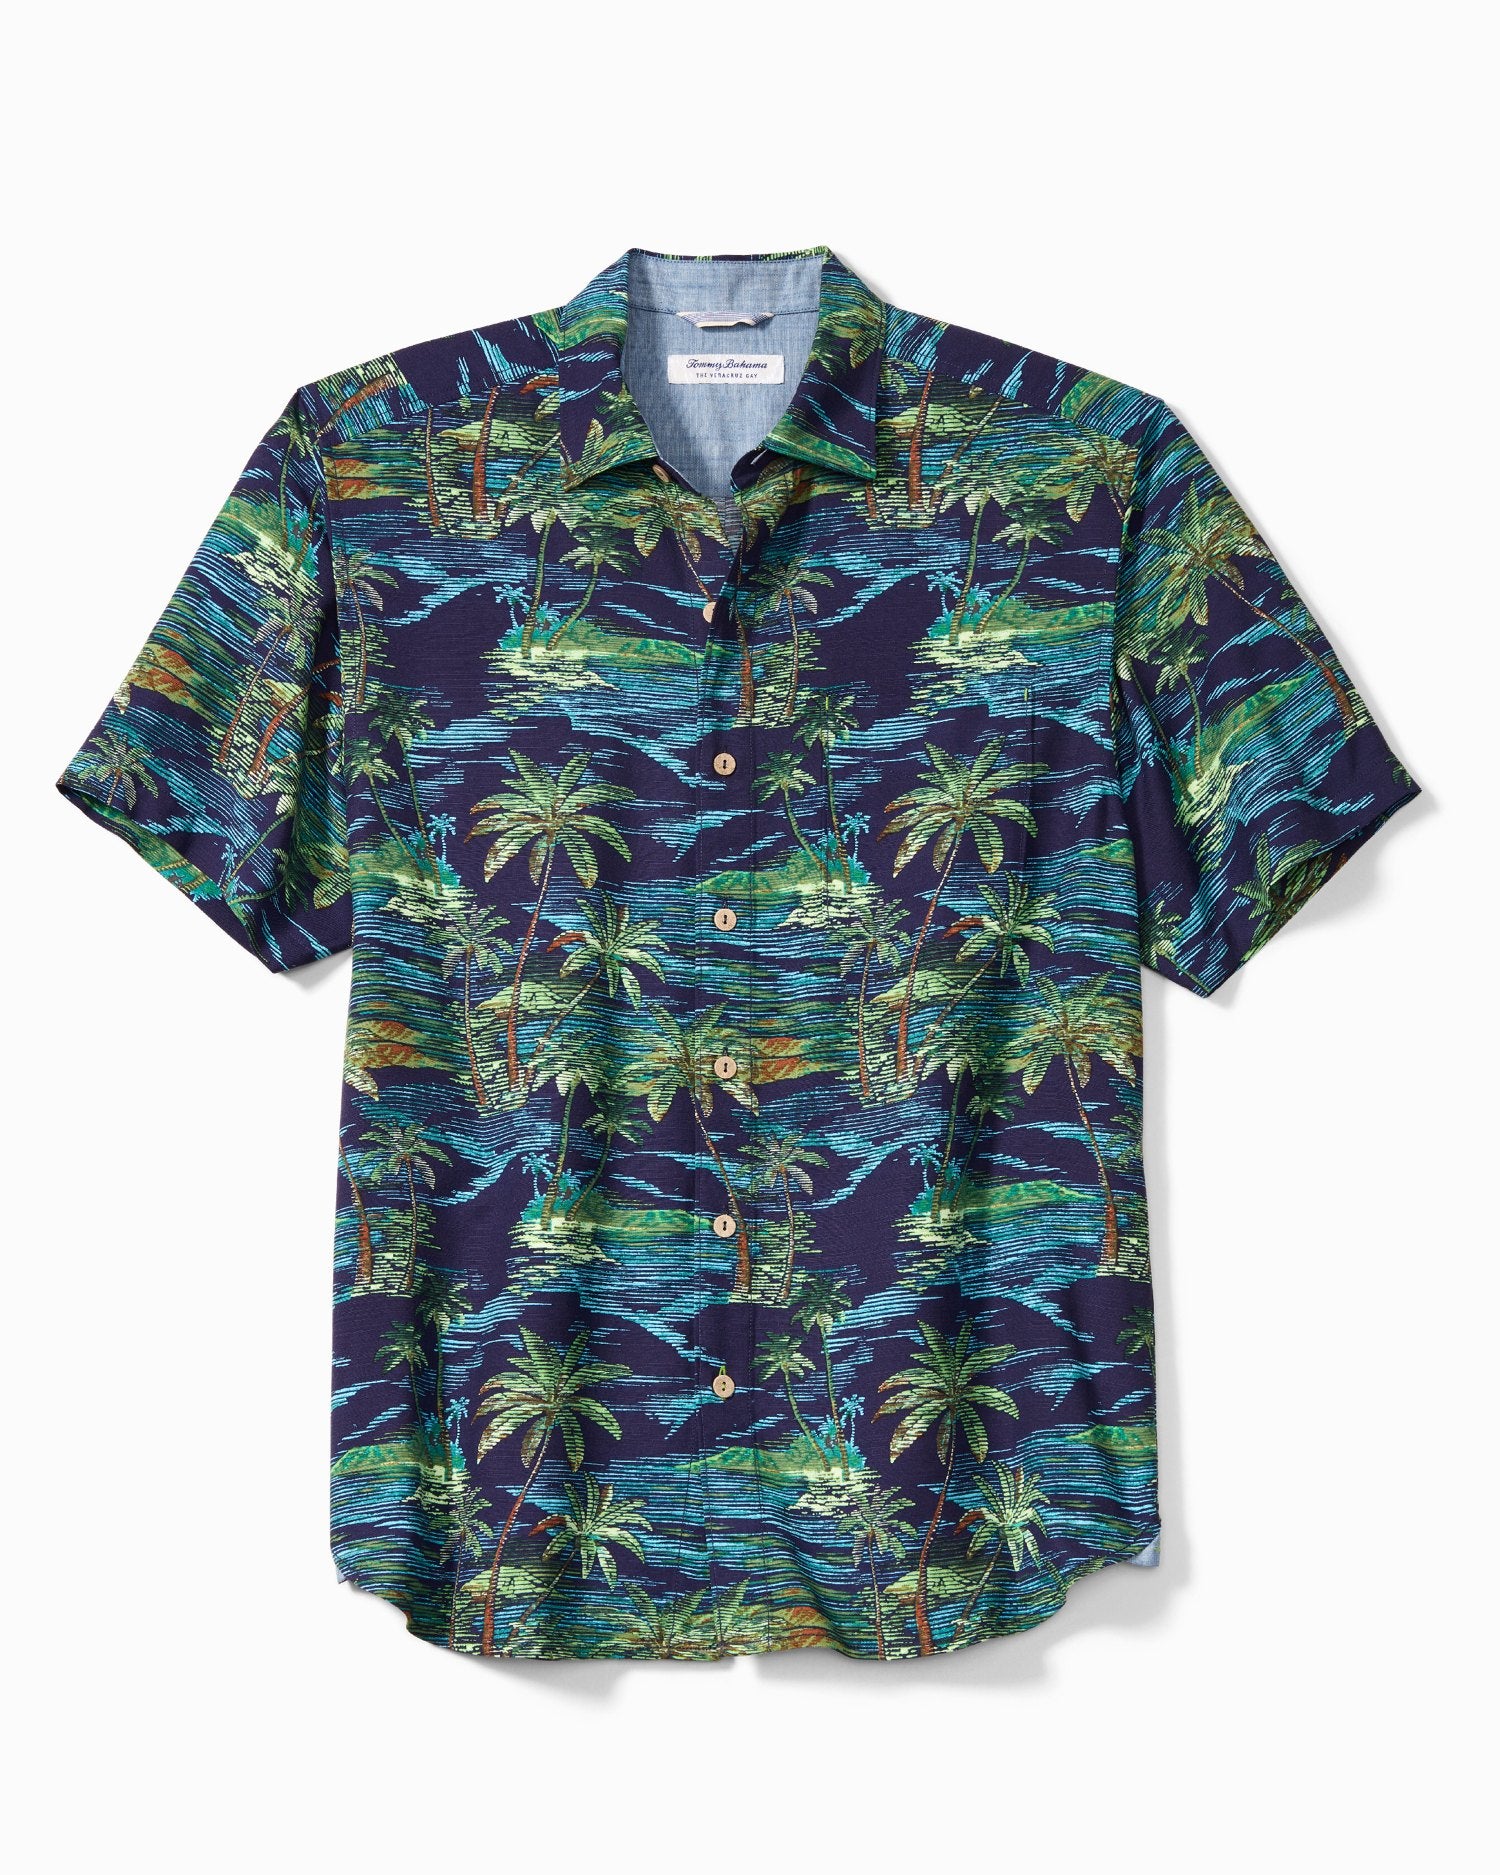 Tommy Bahama Veracruz Cay Scenic Isles Camp Shirt Island Navy M  023773526409